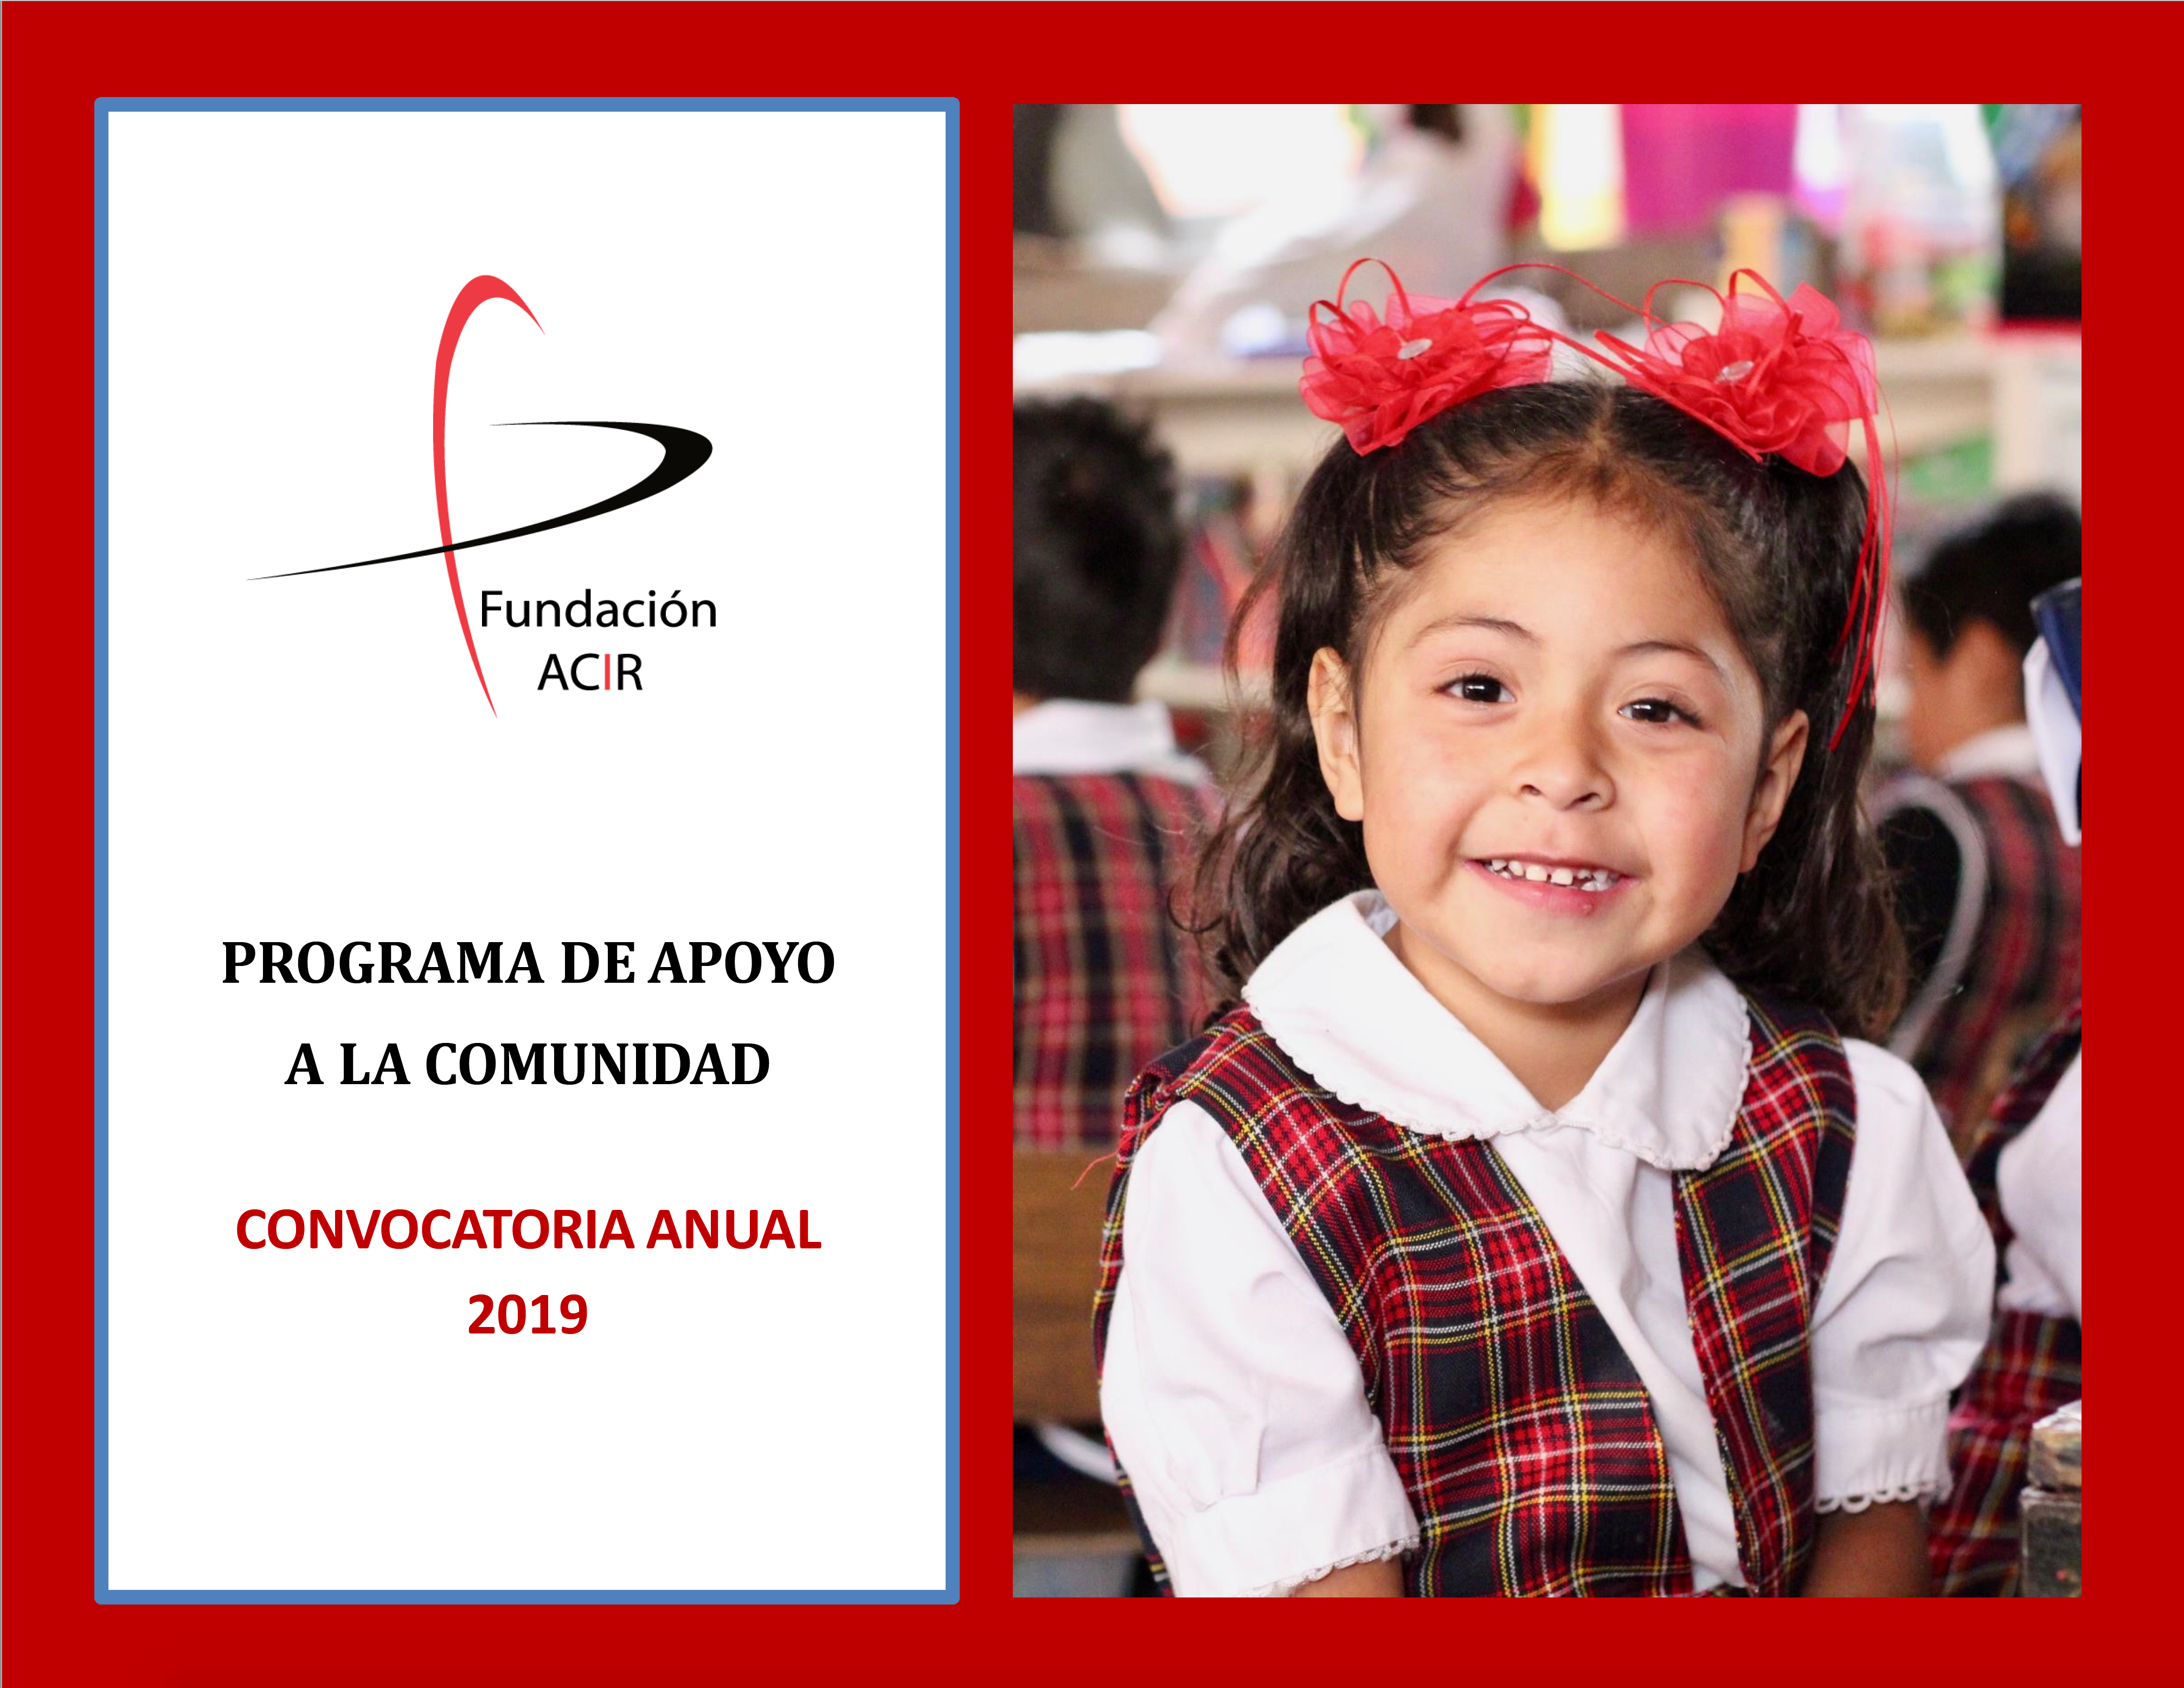 Invitación a participar en la Convocatoria Anual 2019 de Fundación ACIR